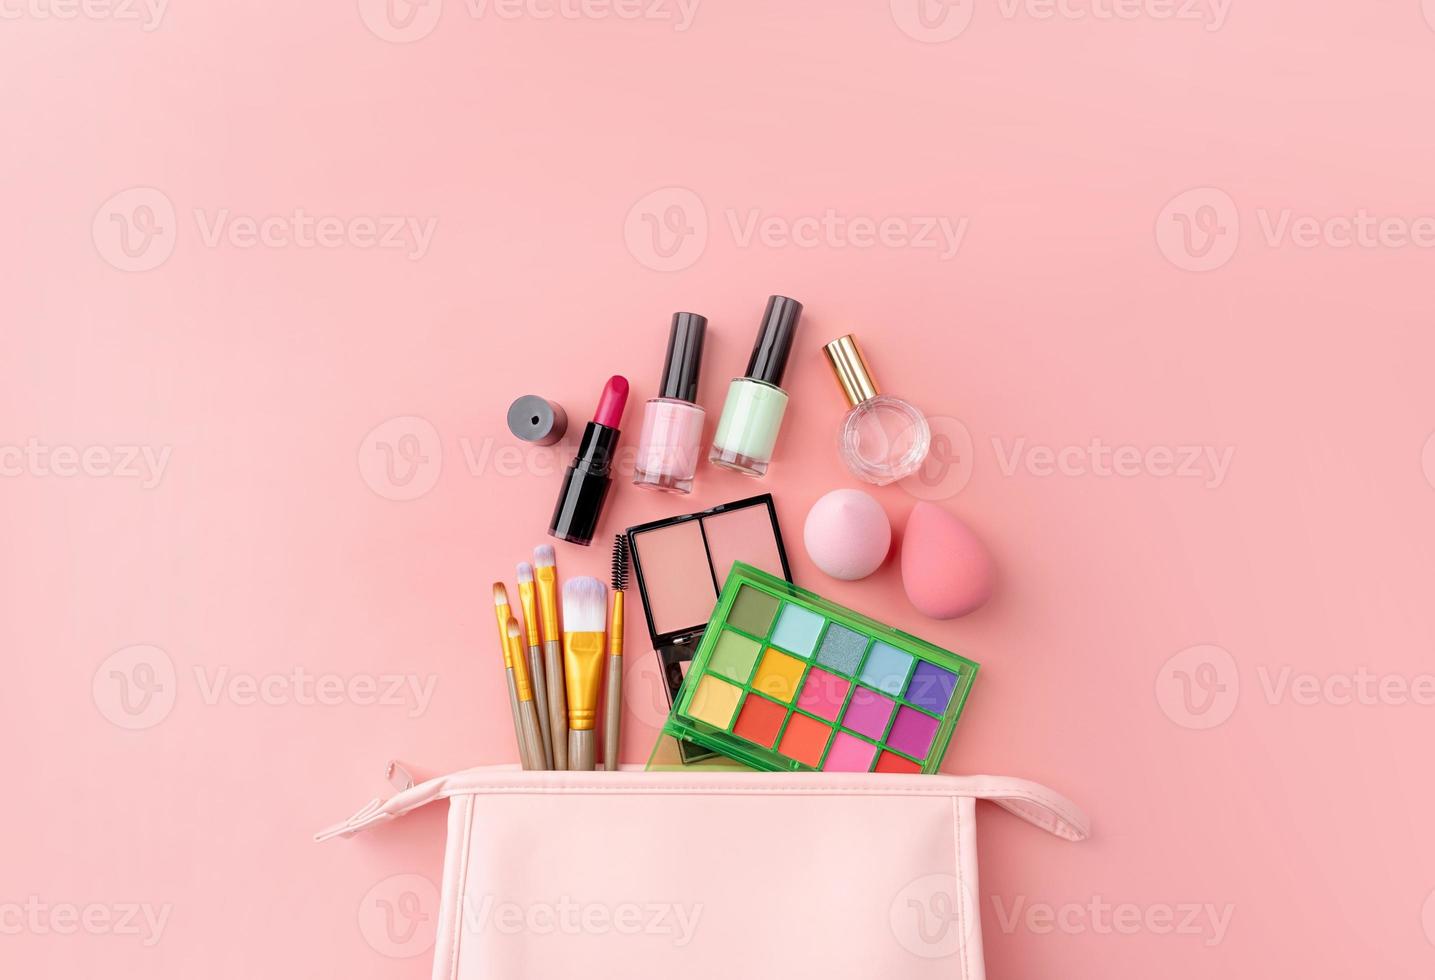 brilhante verão sombra paleta e Maquiagem produtos dentro Rosa Cosmético saco em Rosa fundo foto